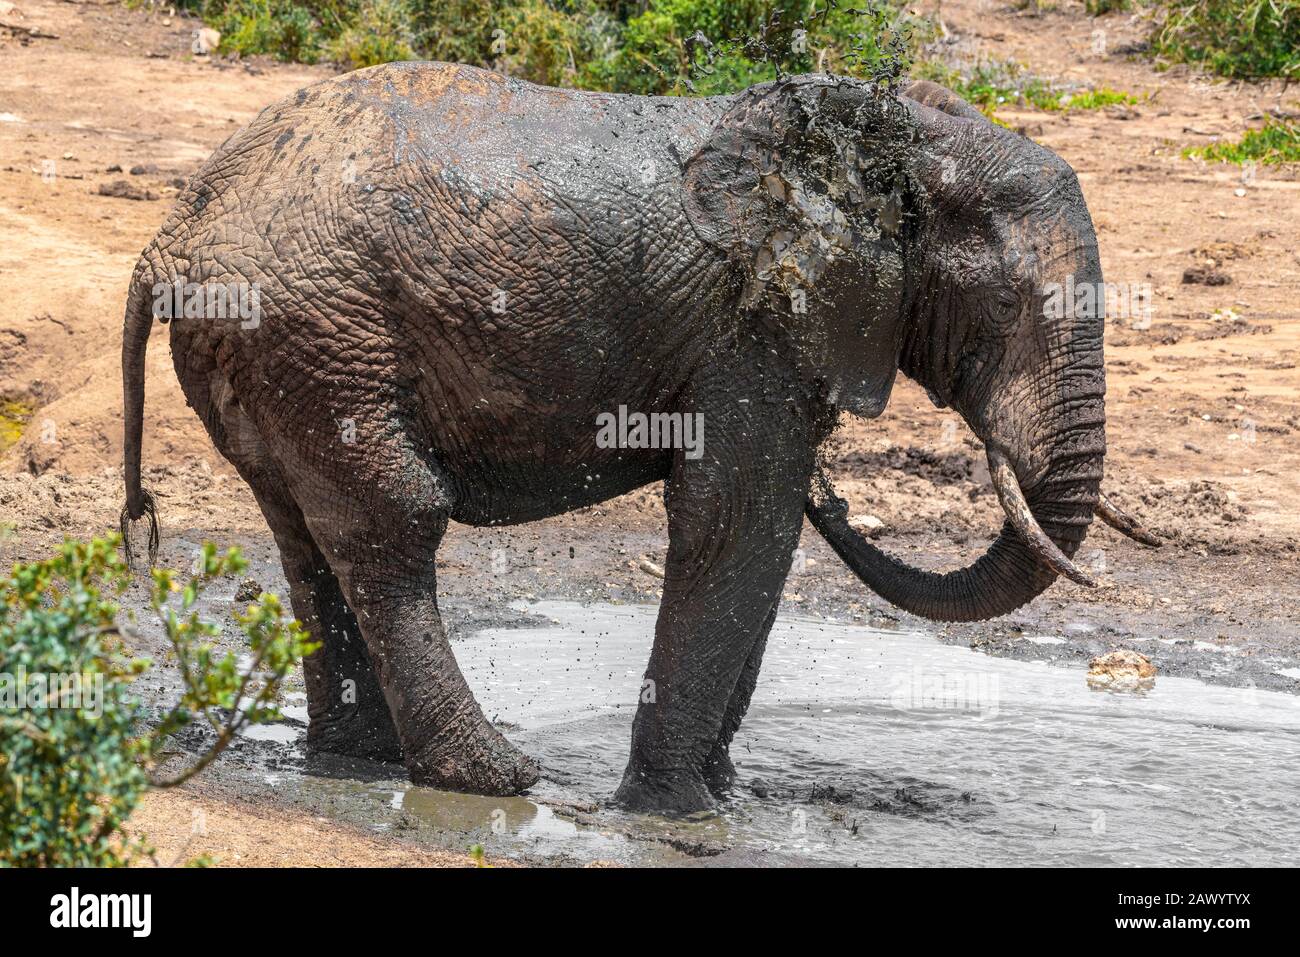 Afrikanischer Elefant an einem sehr heißen Tag, der sich mit schlammigem  Wasser bedeckt, um sich abzukühlen und als Sonnenschutz zu fungieren, Addo  Elephant National Park, Südafrika Stockfotografie - Alamy